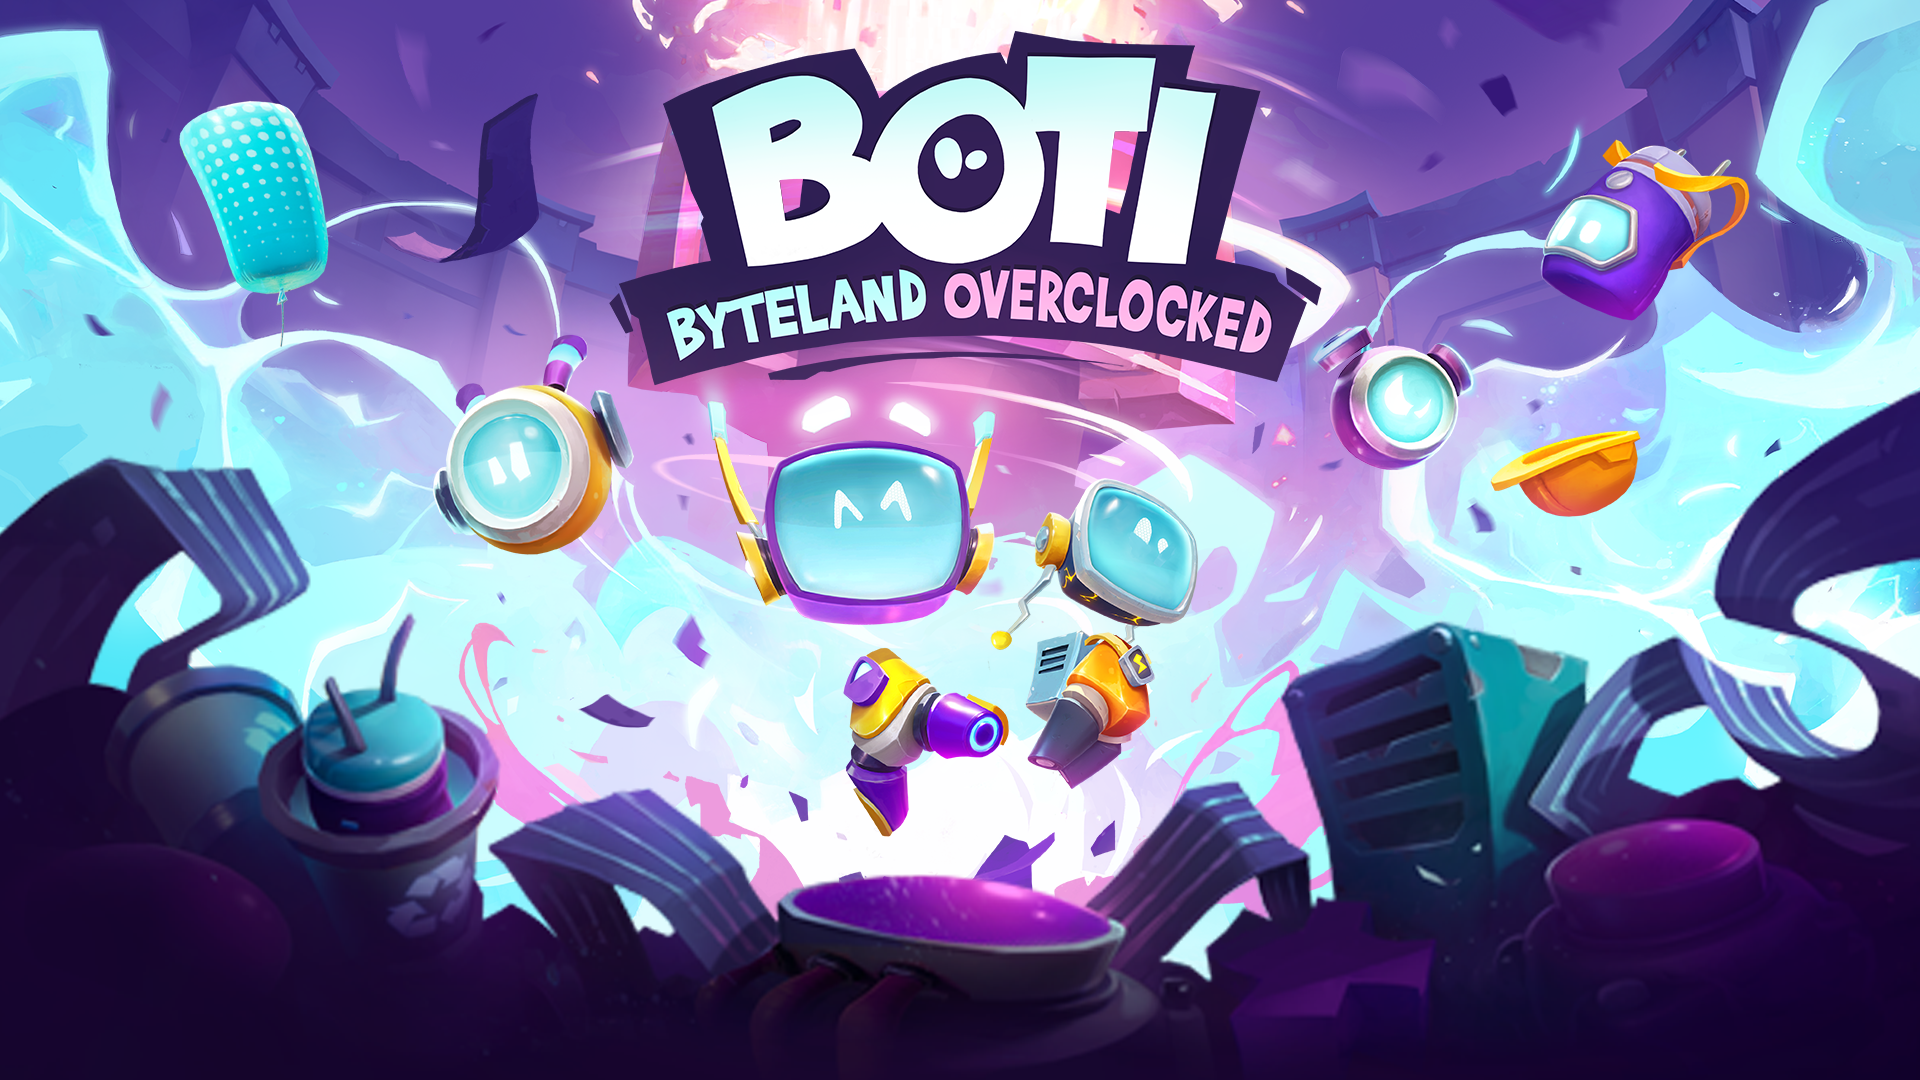 Boti: Byteland Overclocked Boti Byteland Overclocked 